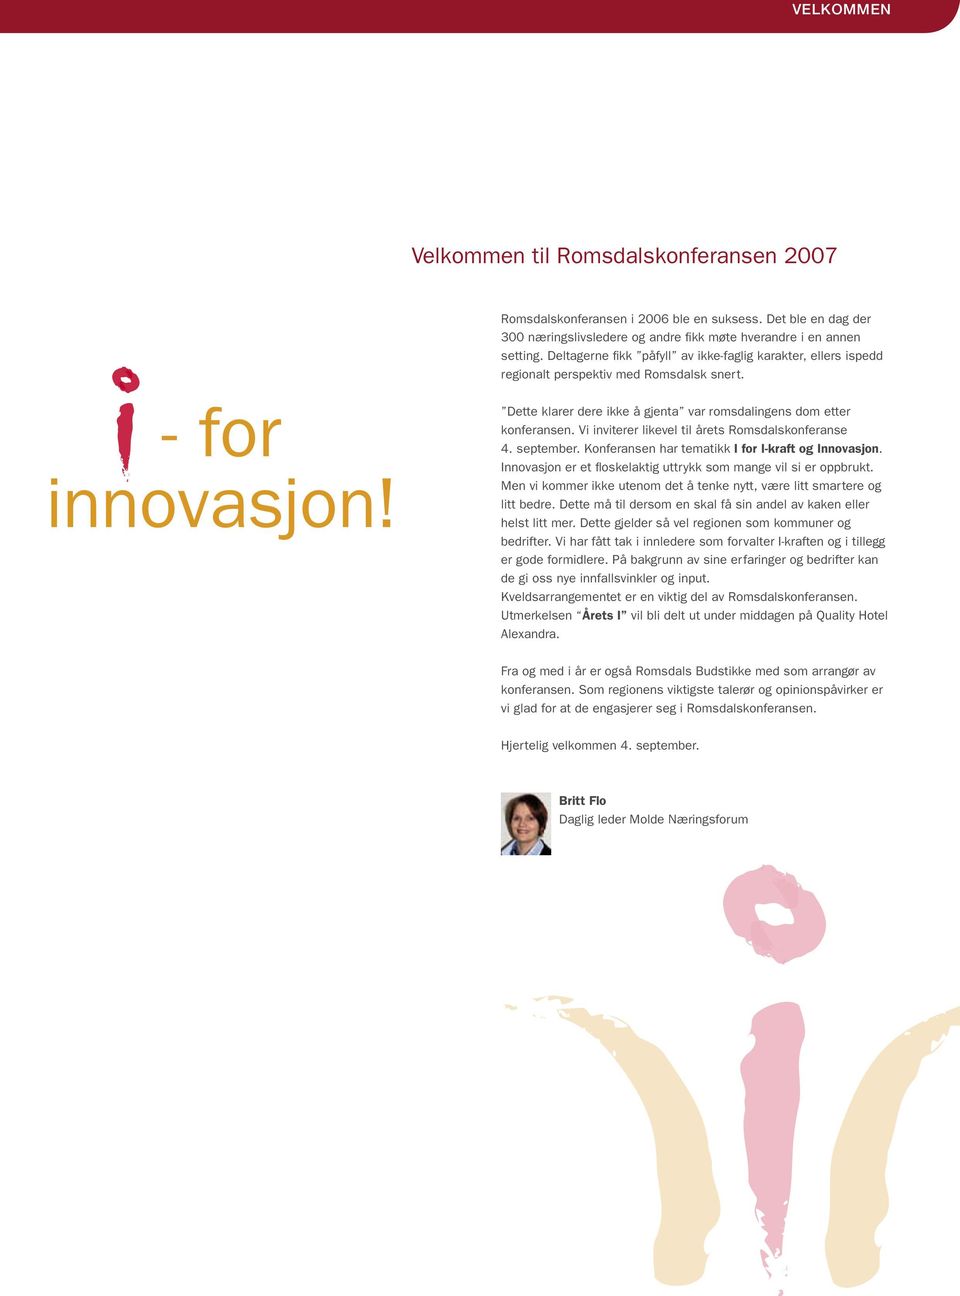 Vi inviterer likevel til årets Romsdalskonferanse 4. september. Konferansen har tematikk I for I-kraft og Innovasjon. Innovasjon er et floskelaktig uttrykk som mange vil si er oppbrukt.